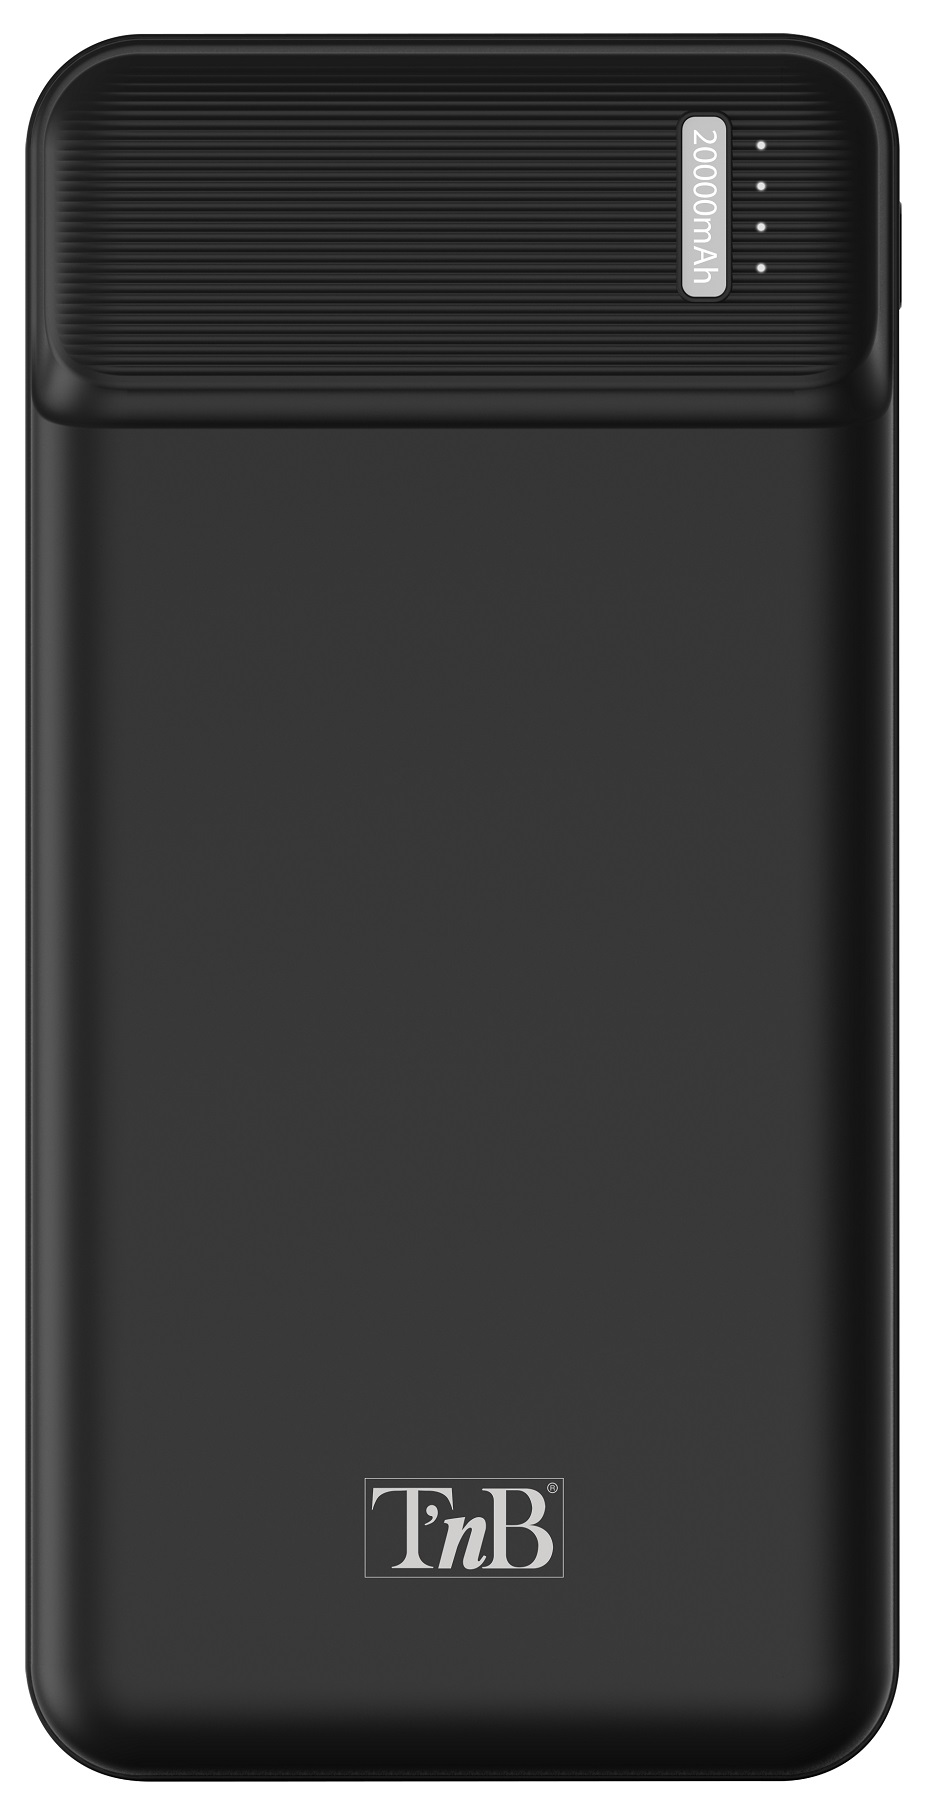 Универсальная мобильная батарея TNB 20000mAh 10W Black (PBU20000) в Киеве